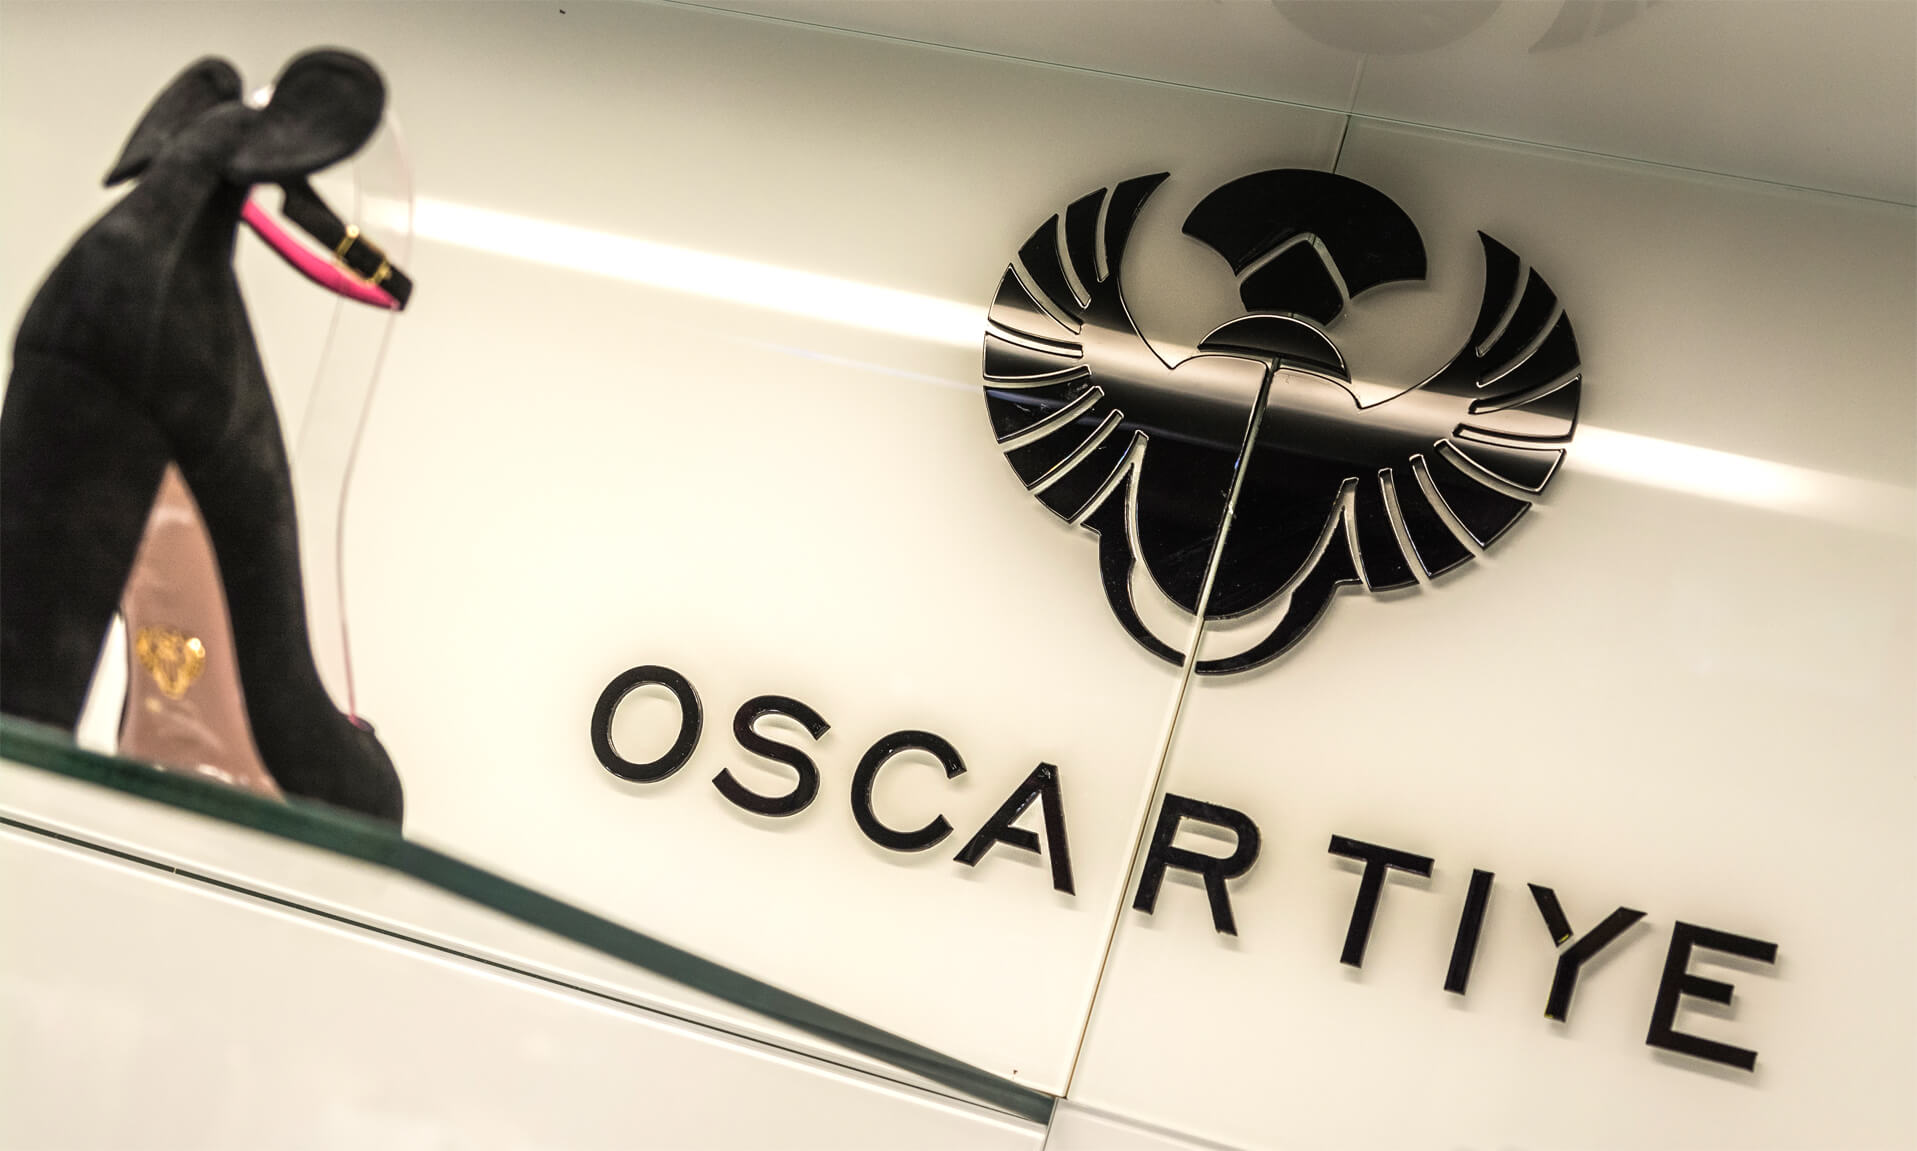 Oscartye - Oscar Tiye - logo i litery przestrzenne 3D wykonane z plexi w czarnym kolorze